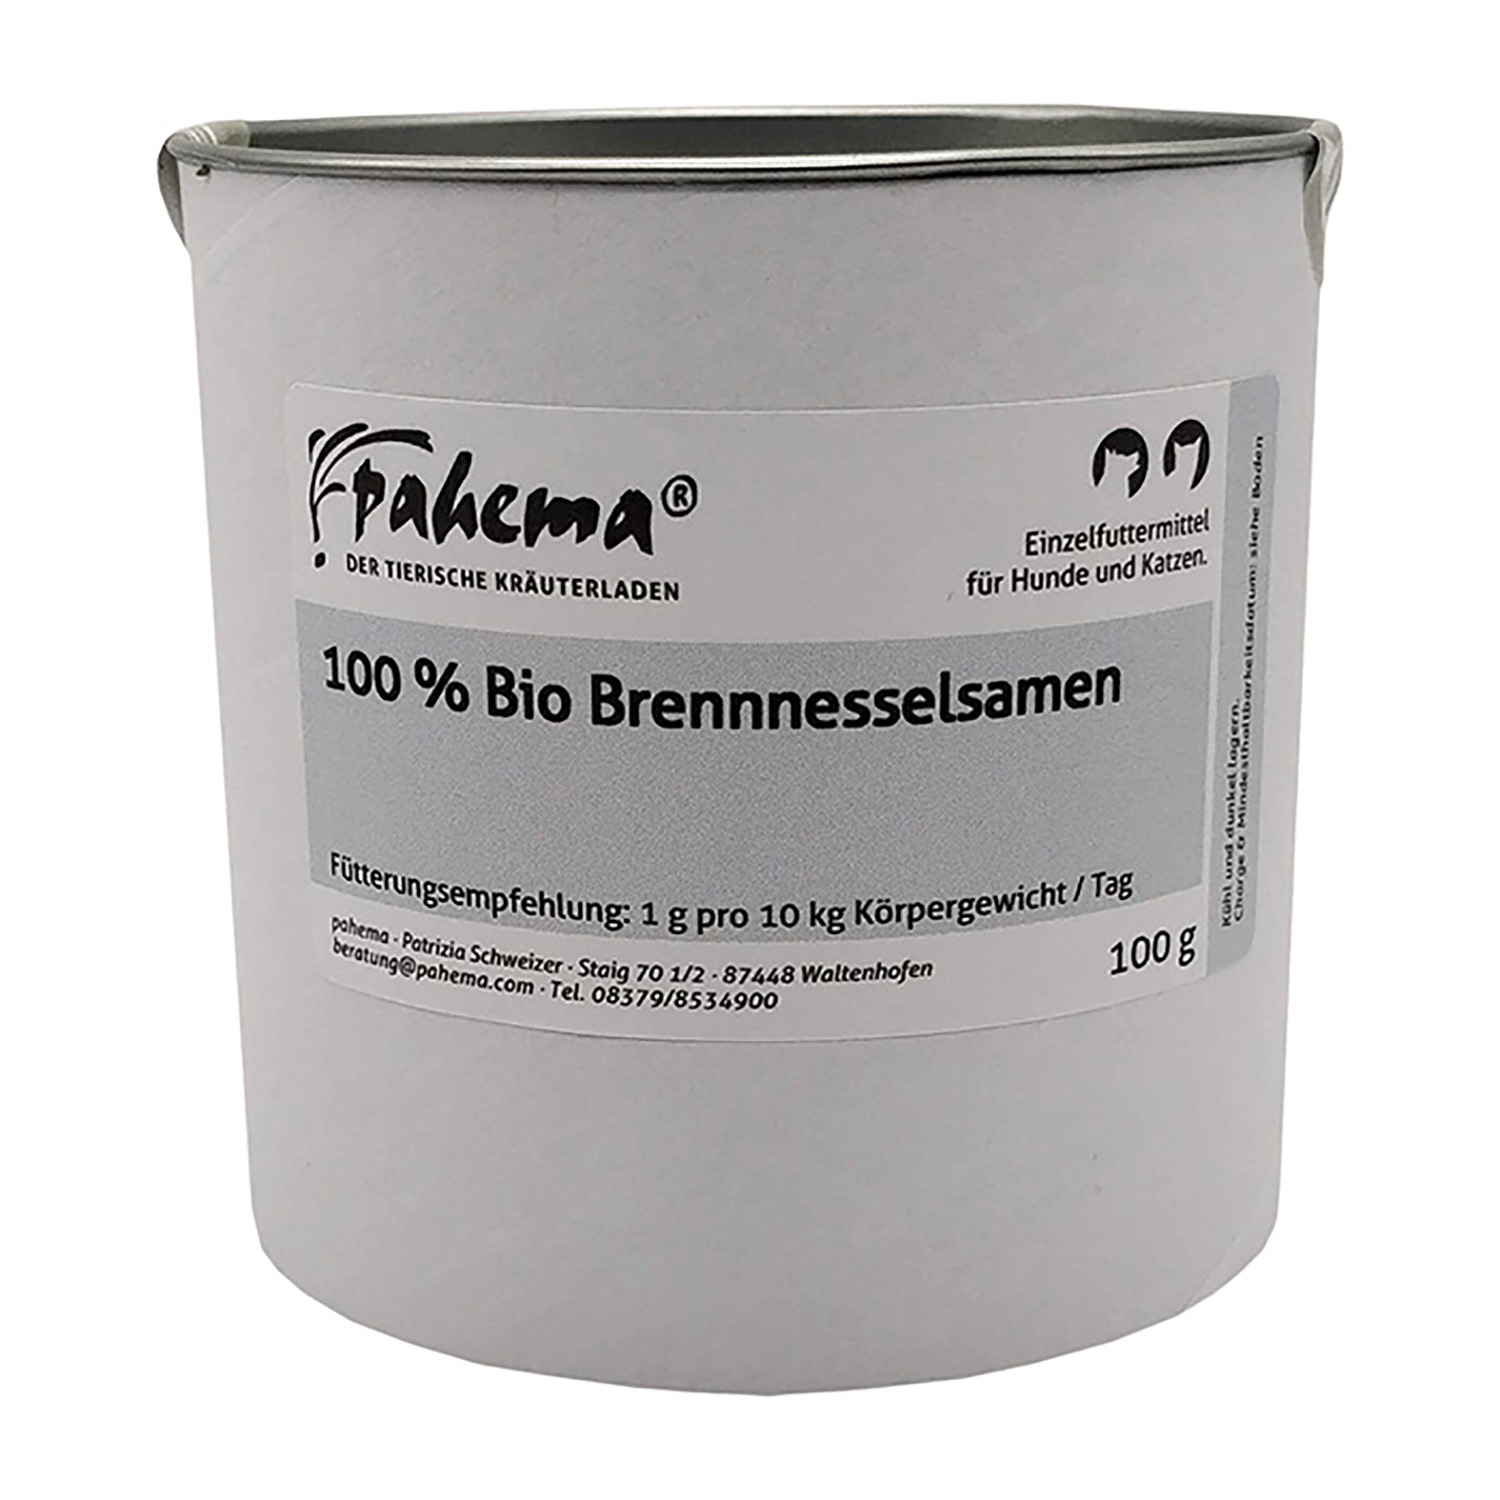 Bio-Brennnesselsamen von Pahema – 200g